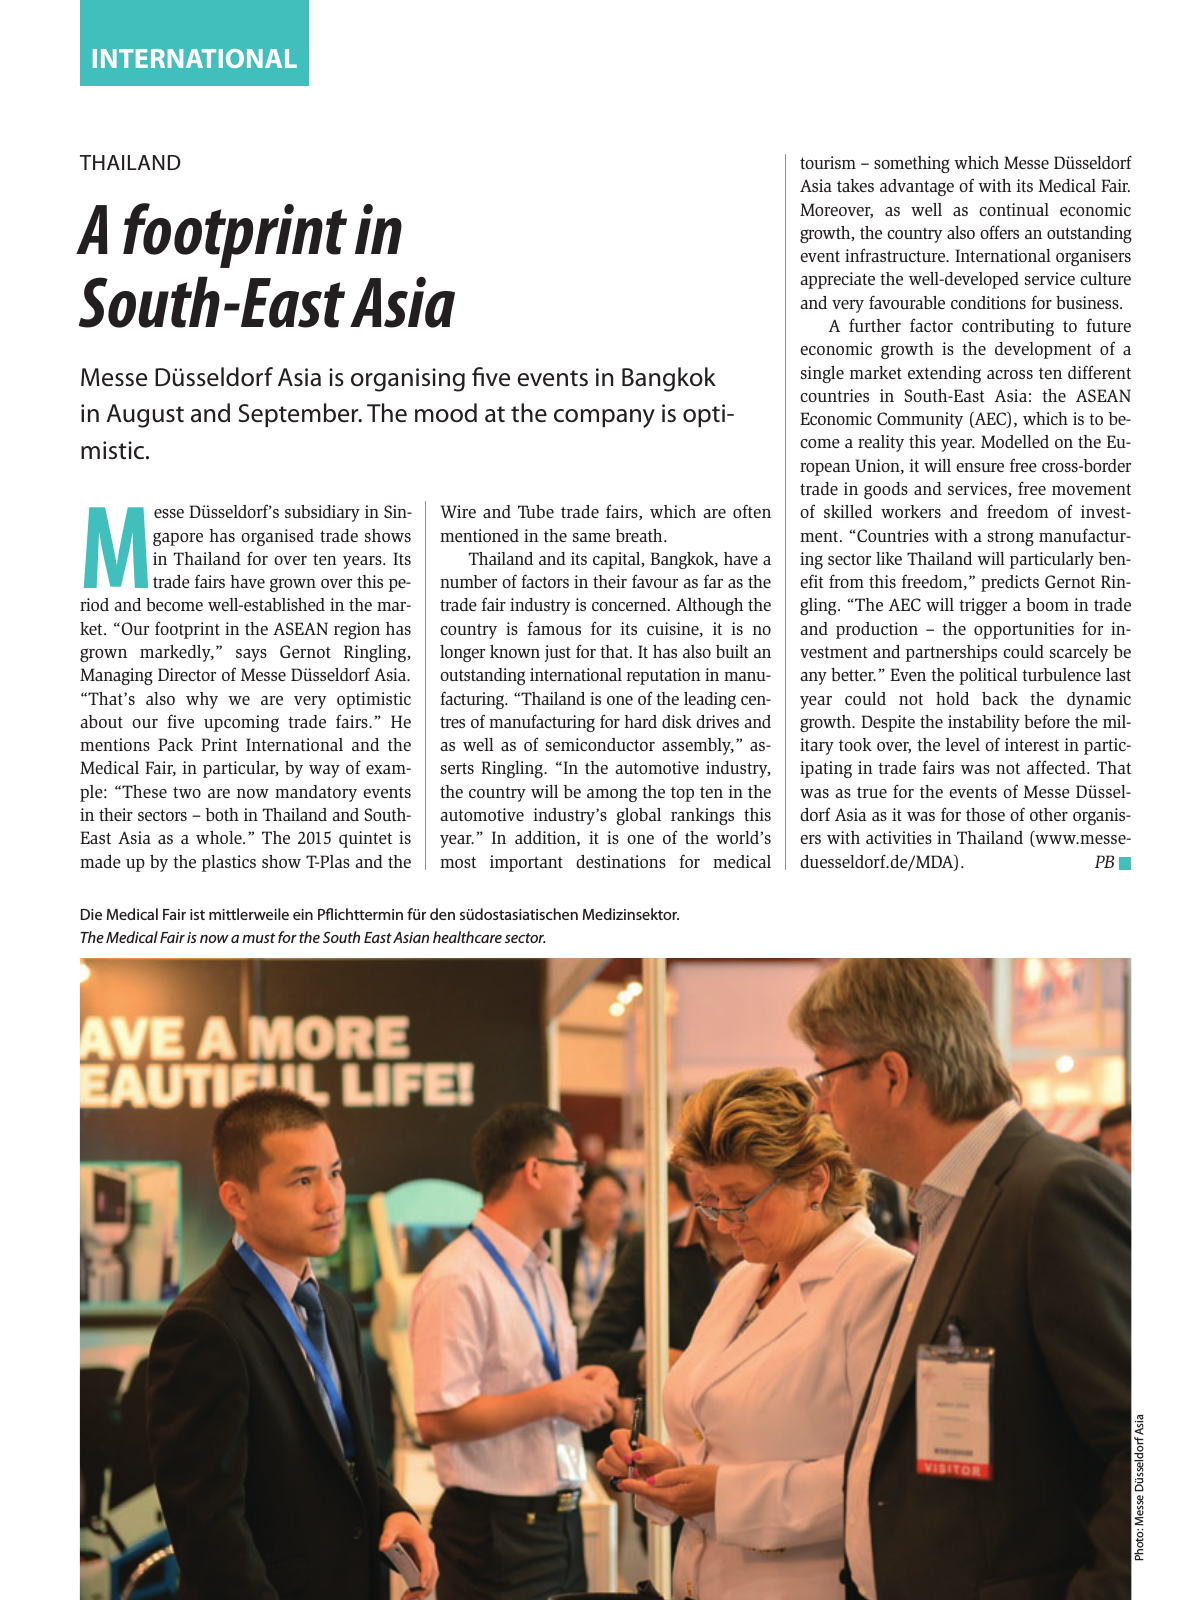 Vorschau TFI Trade-Fairs-International 02/2015 Seite 31